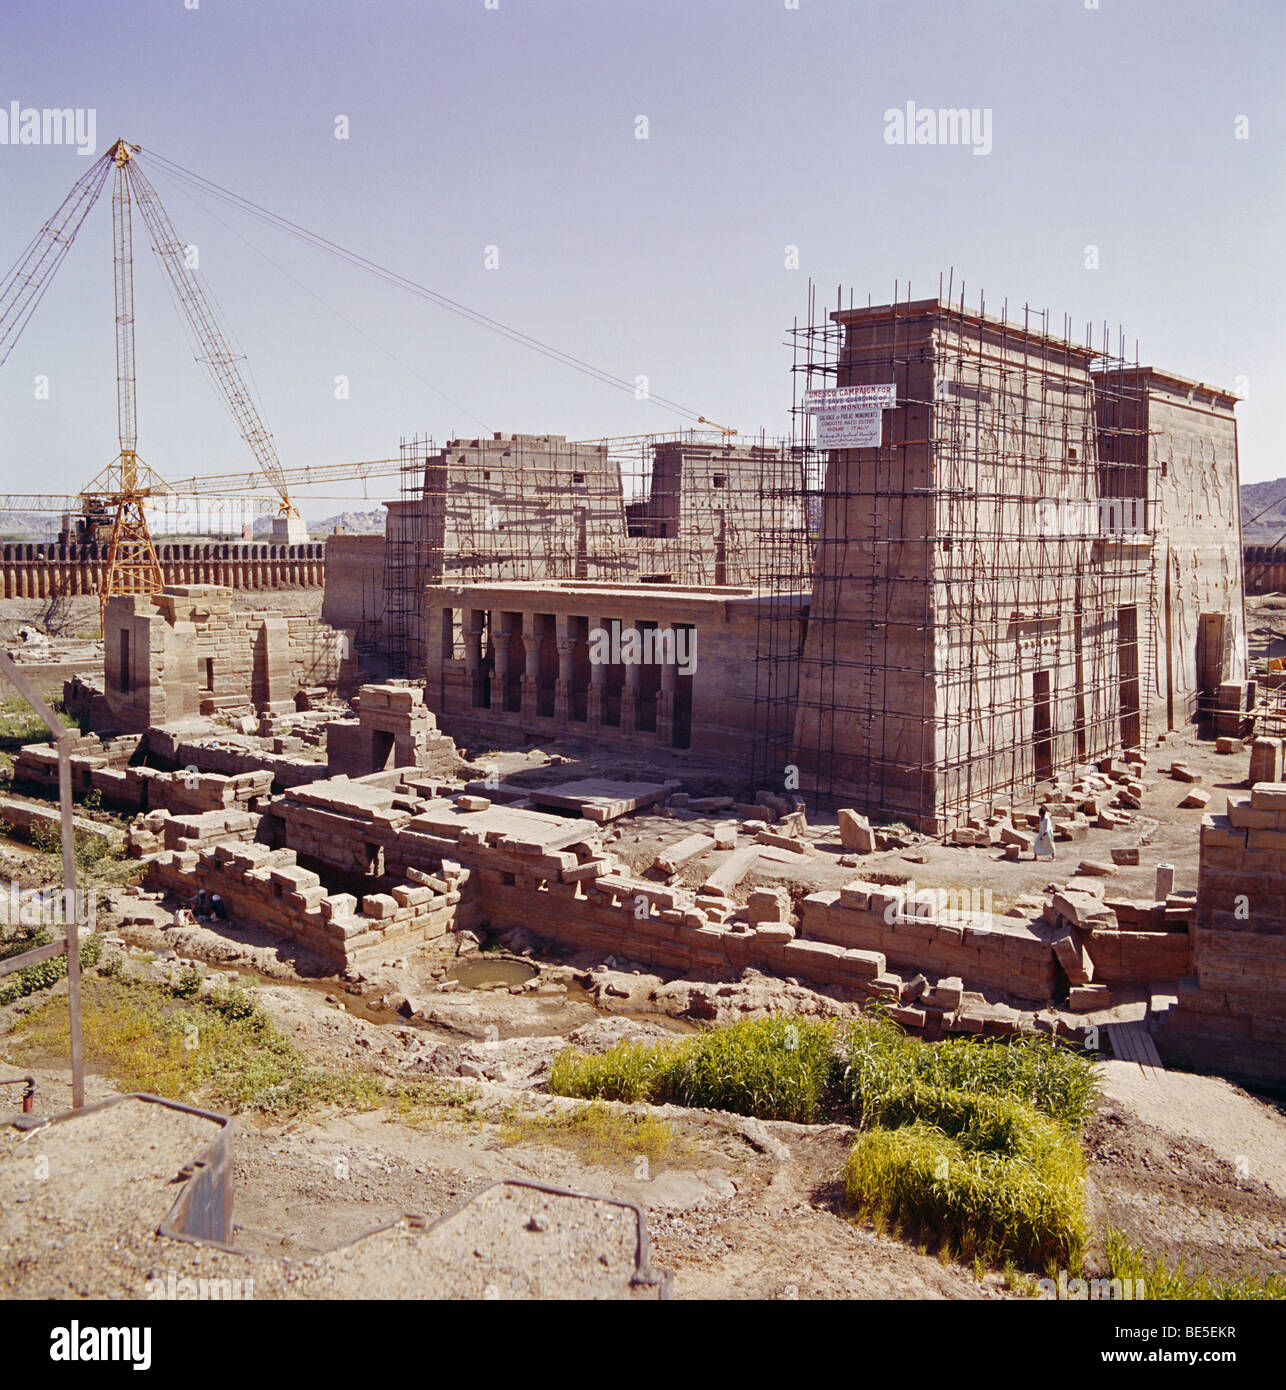 Egipto, la deconstrucción del templo ahogado del Nilo de Isis en Philae, siendo desmantelado piedra por piedra y trasladado a la cercana isla de Agilika Foto de stock